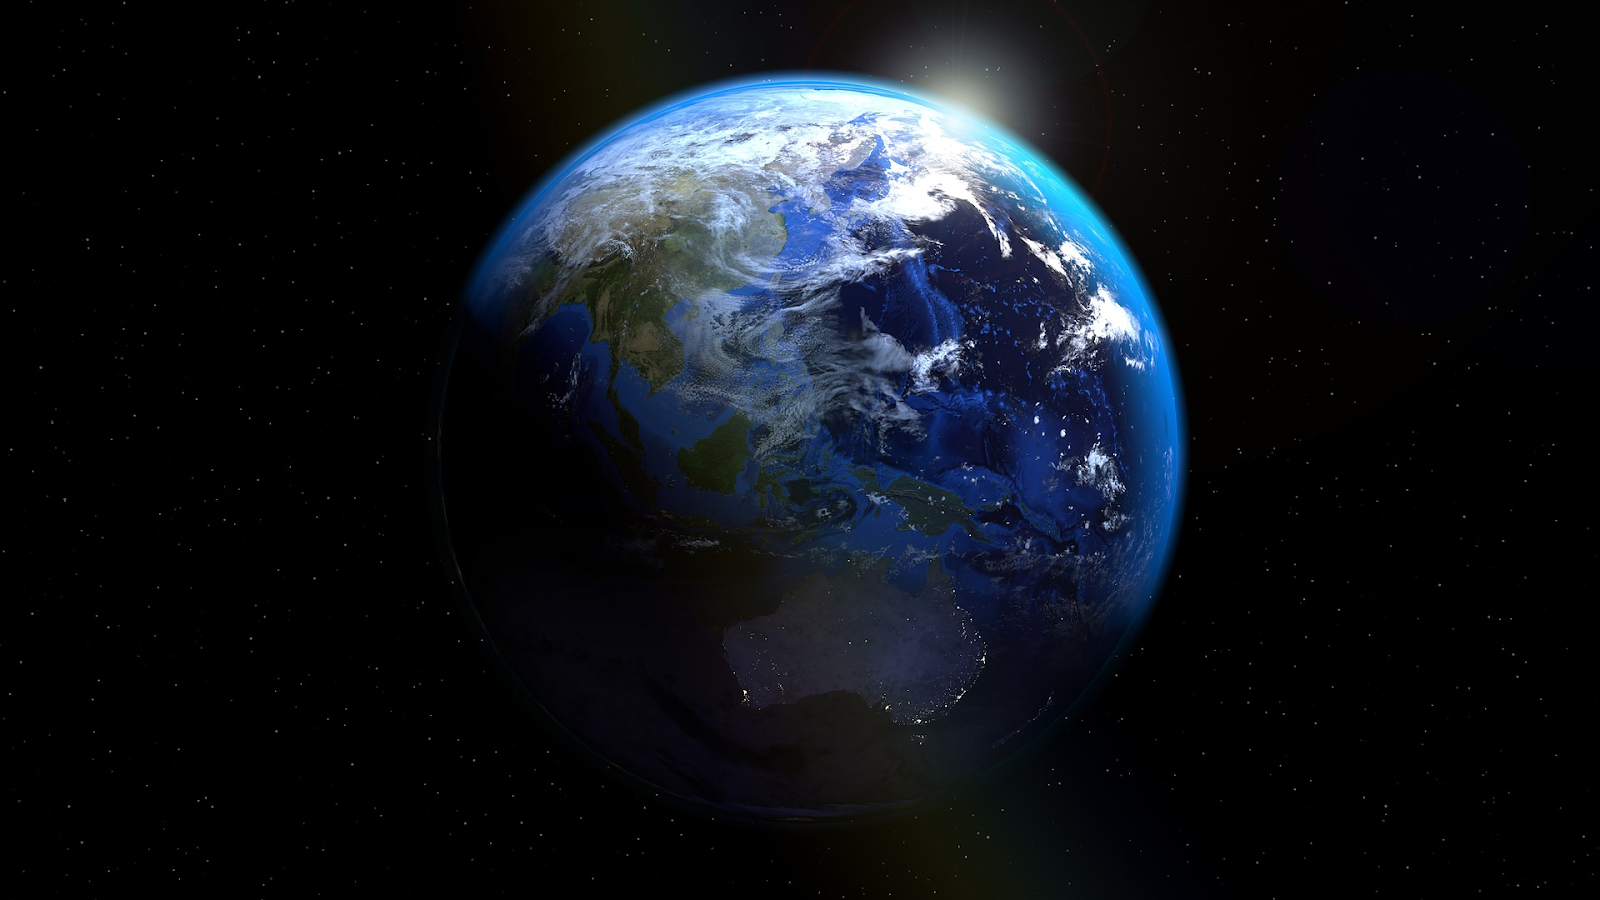 Vista del planeta Tierra desde elespacio.